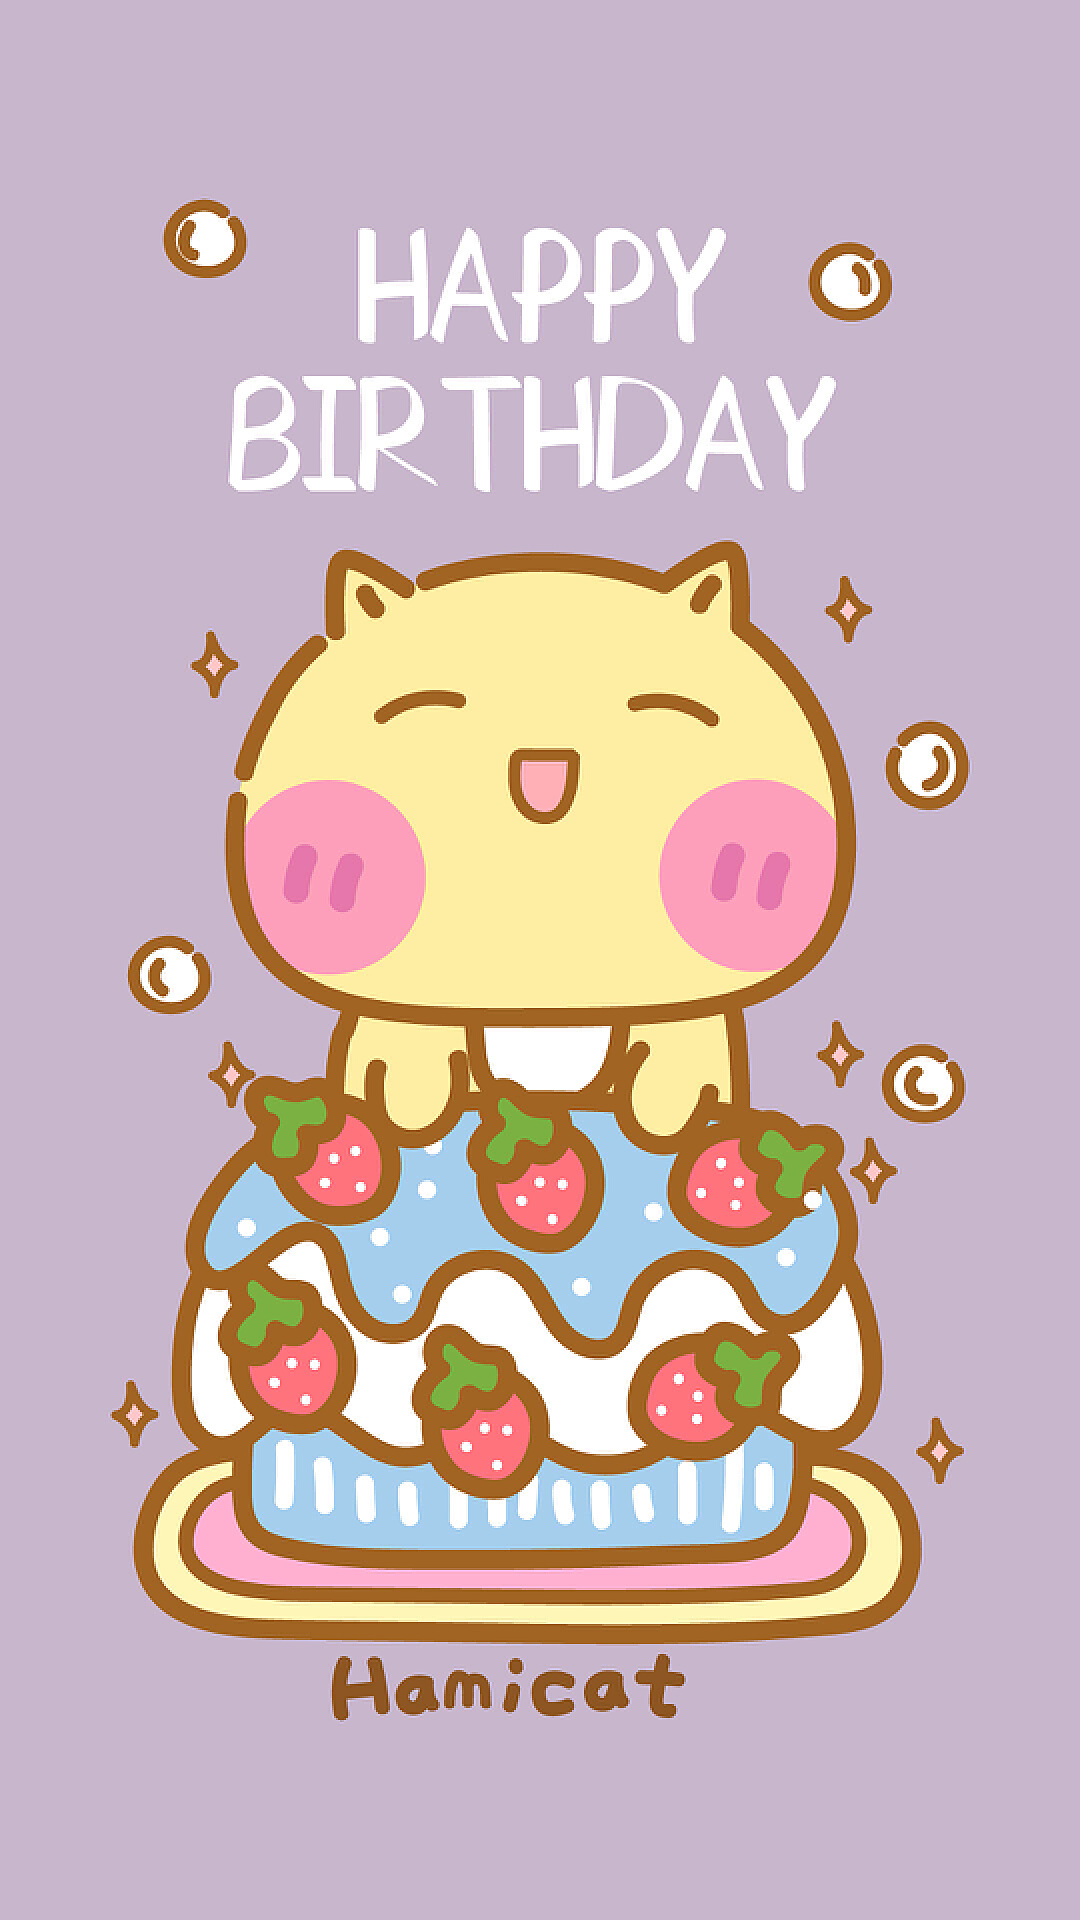 与生日快乐猫的无缝的样式 向量例证. 插画 包括有 滑稽, 喜悦, 五颜六色, 生日, 哺乳动物, 设计 - 104315836